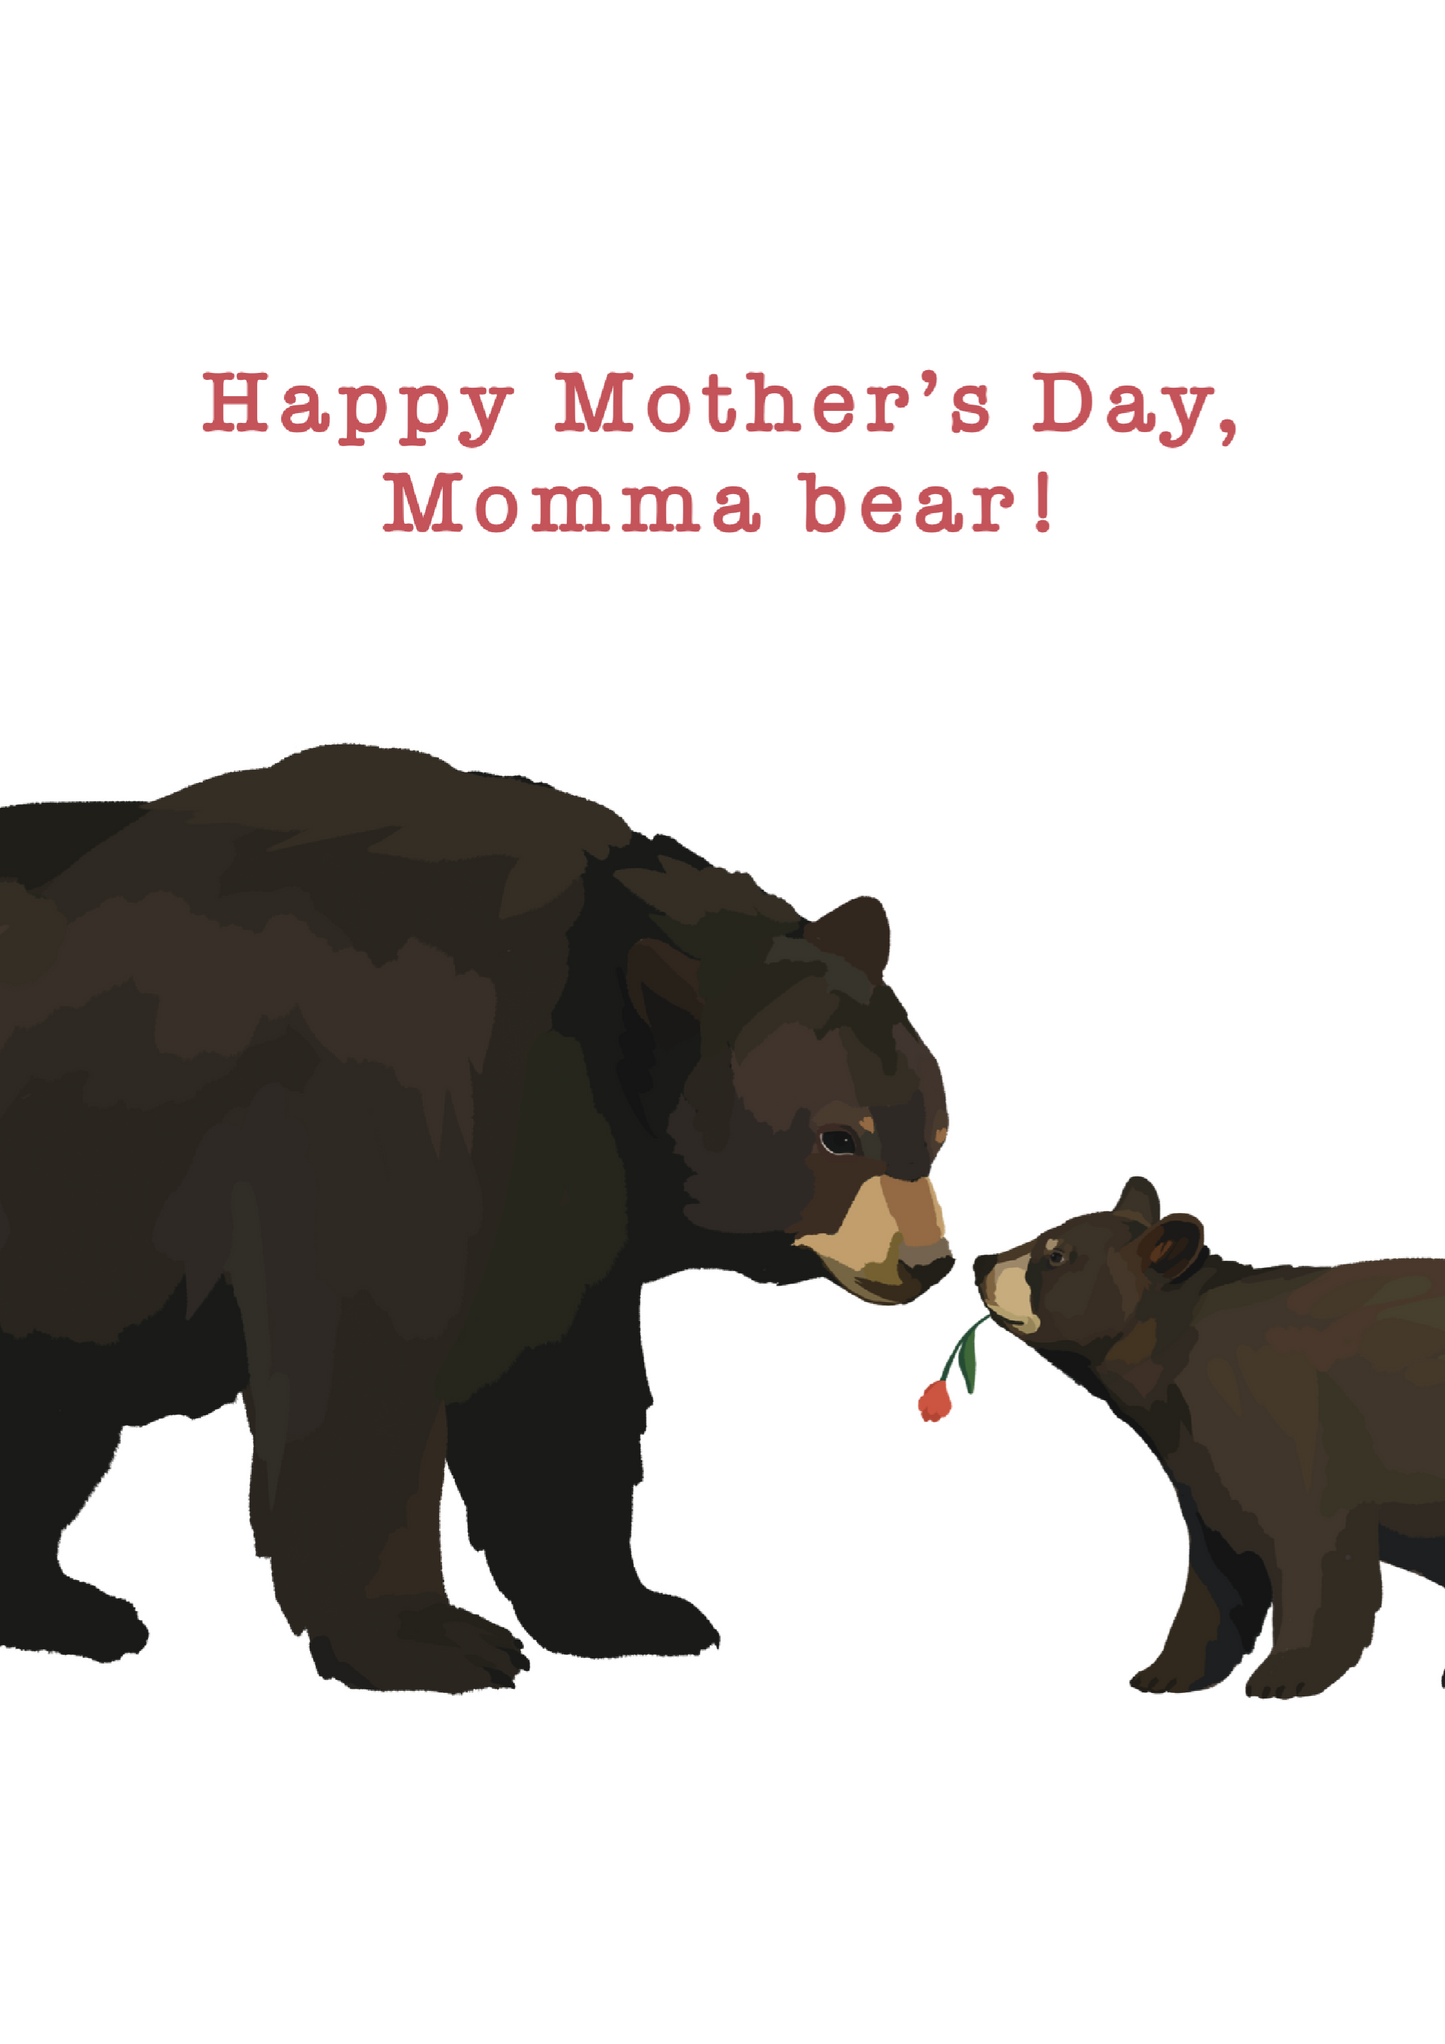 Momma Bear